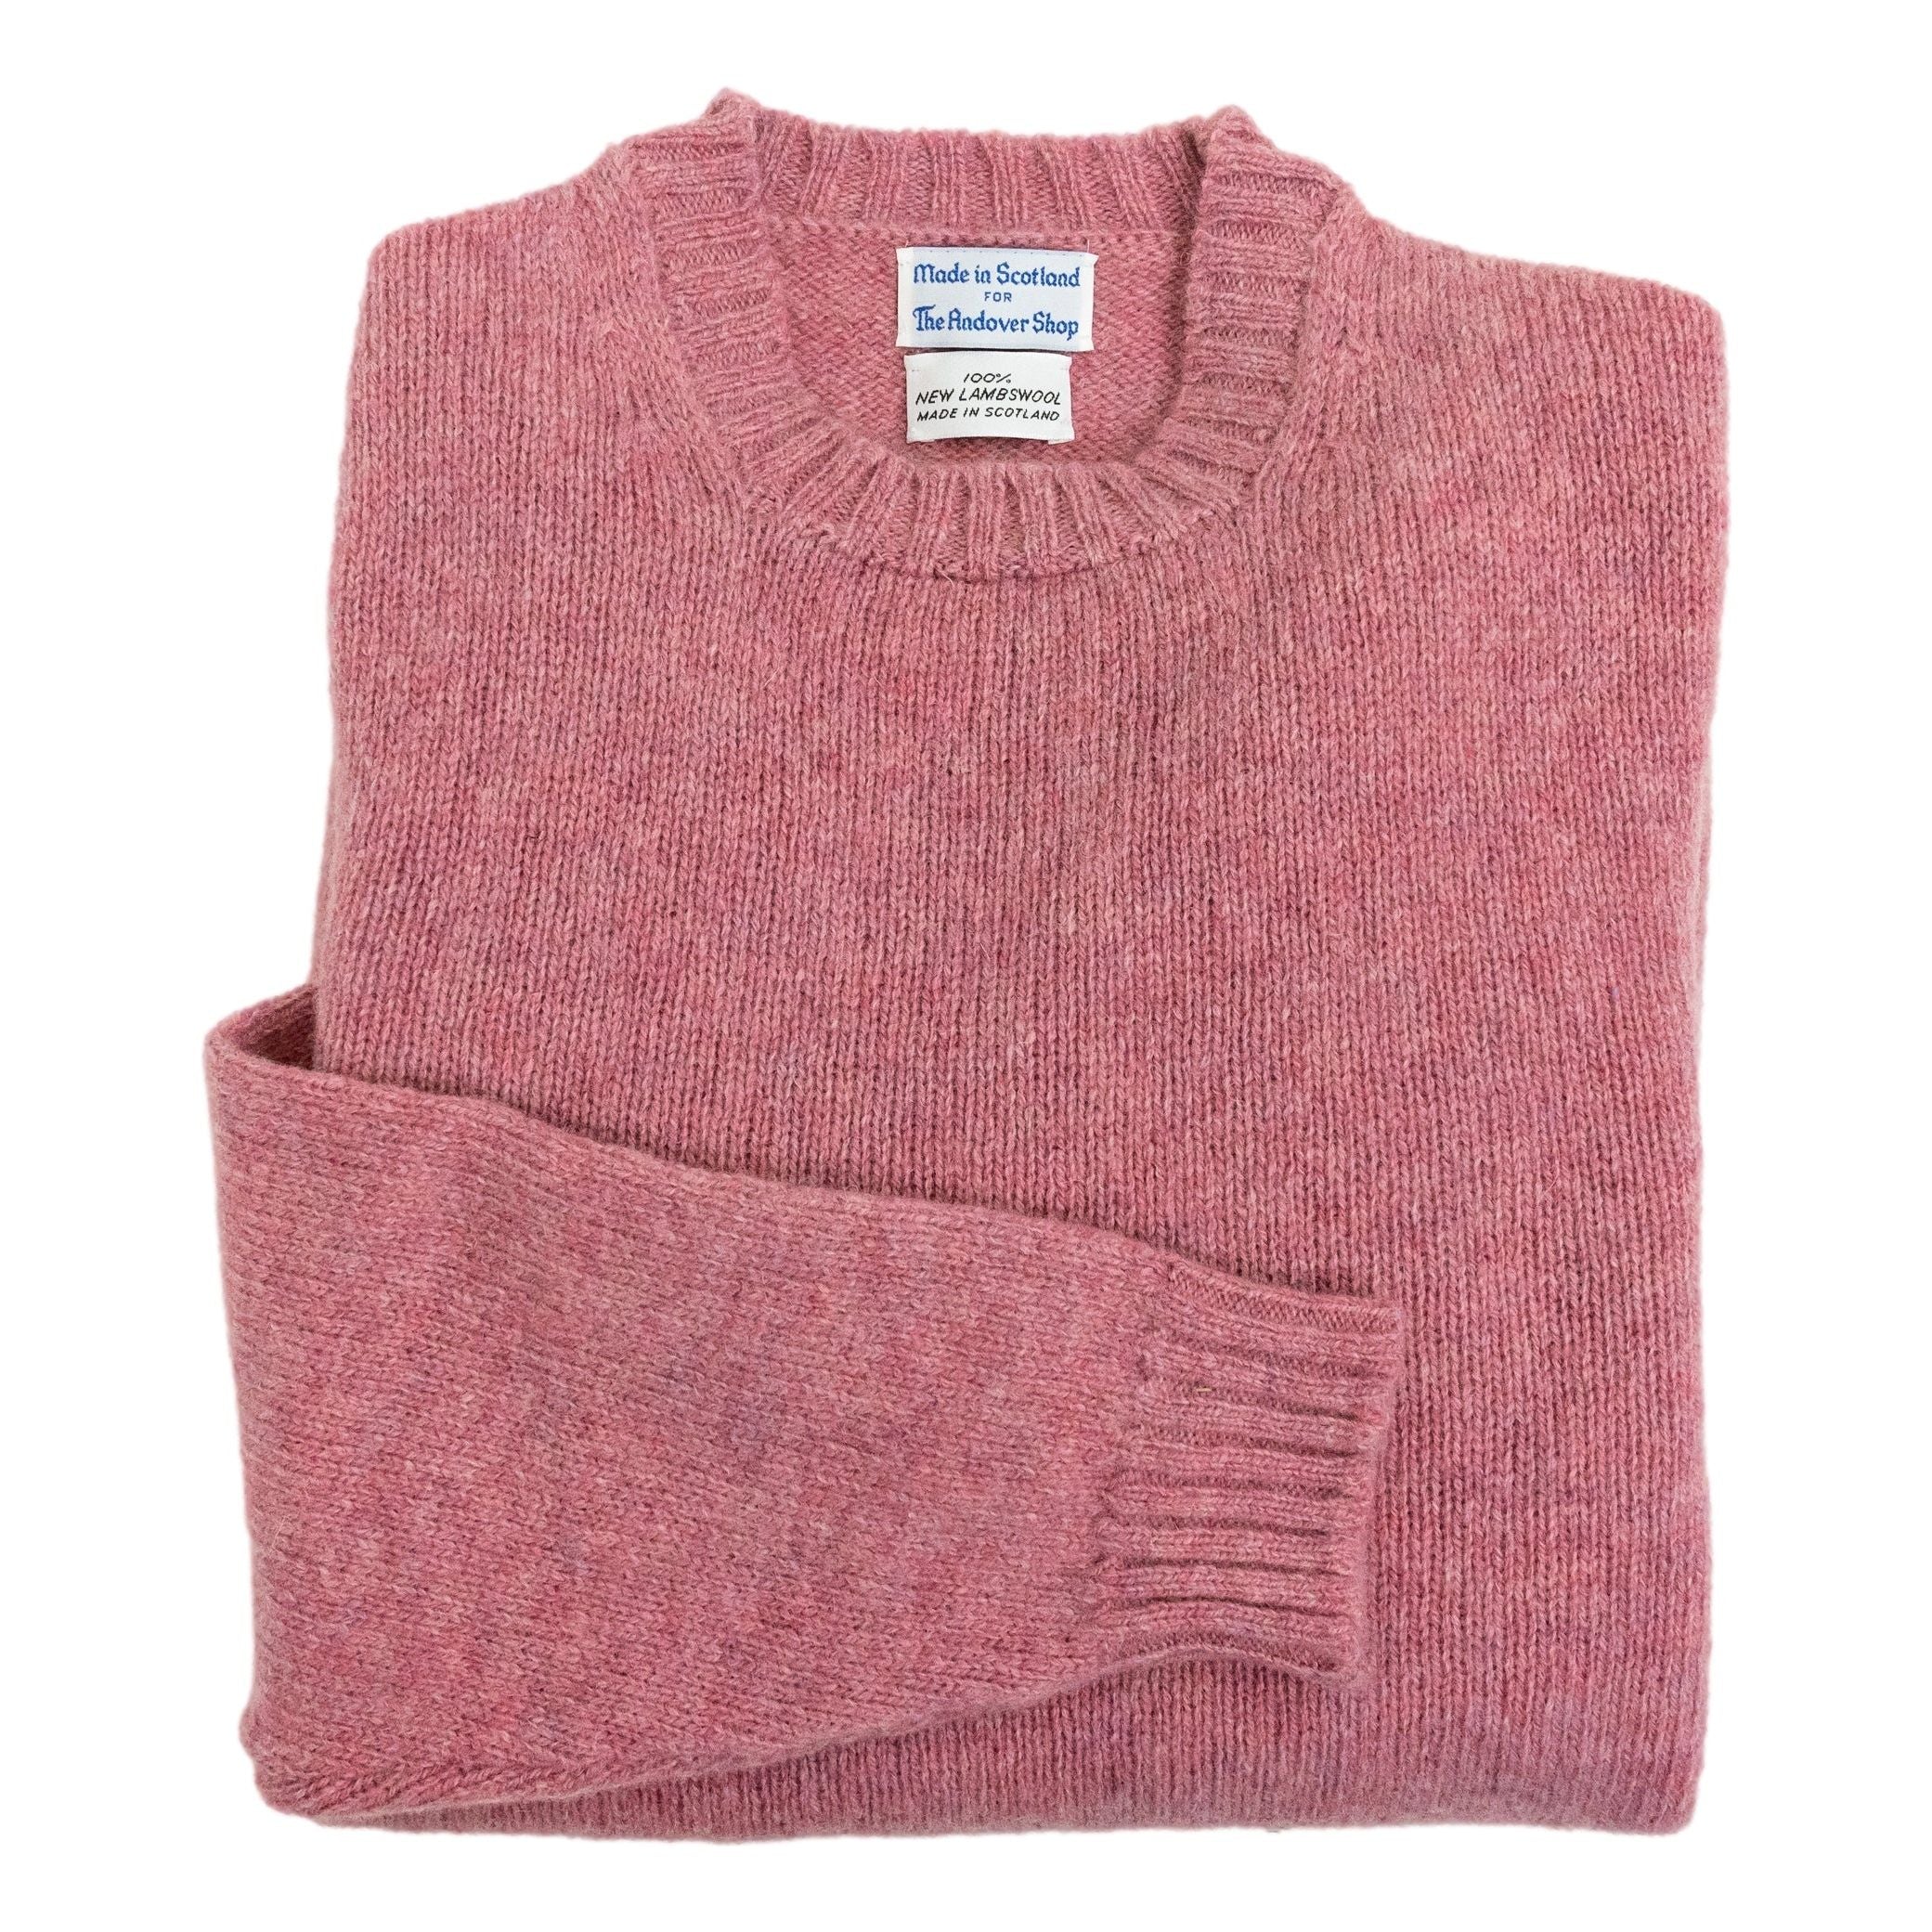 Scottish Shetland Wool Sweater